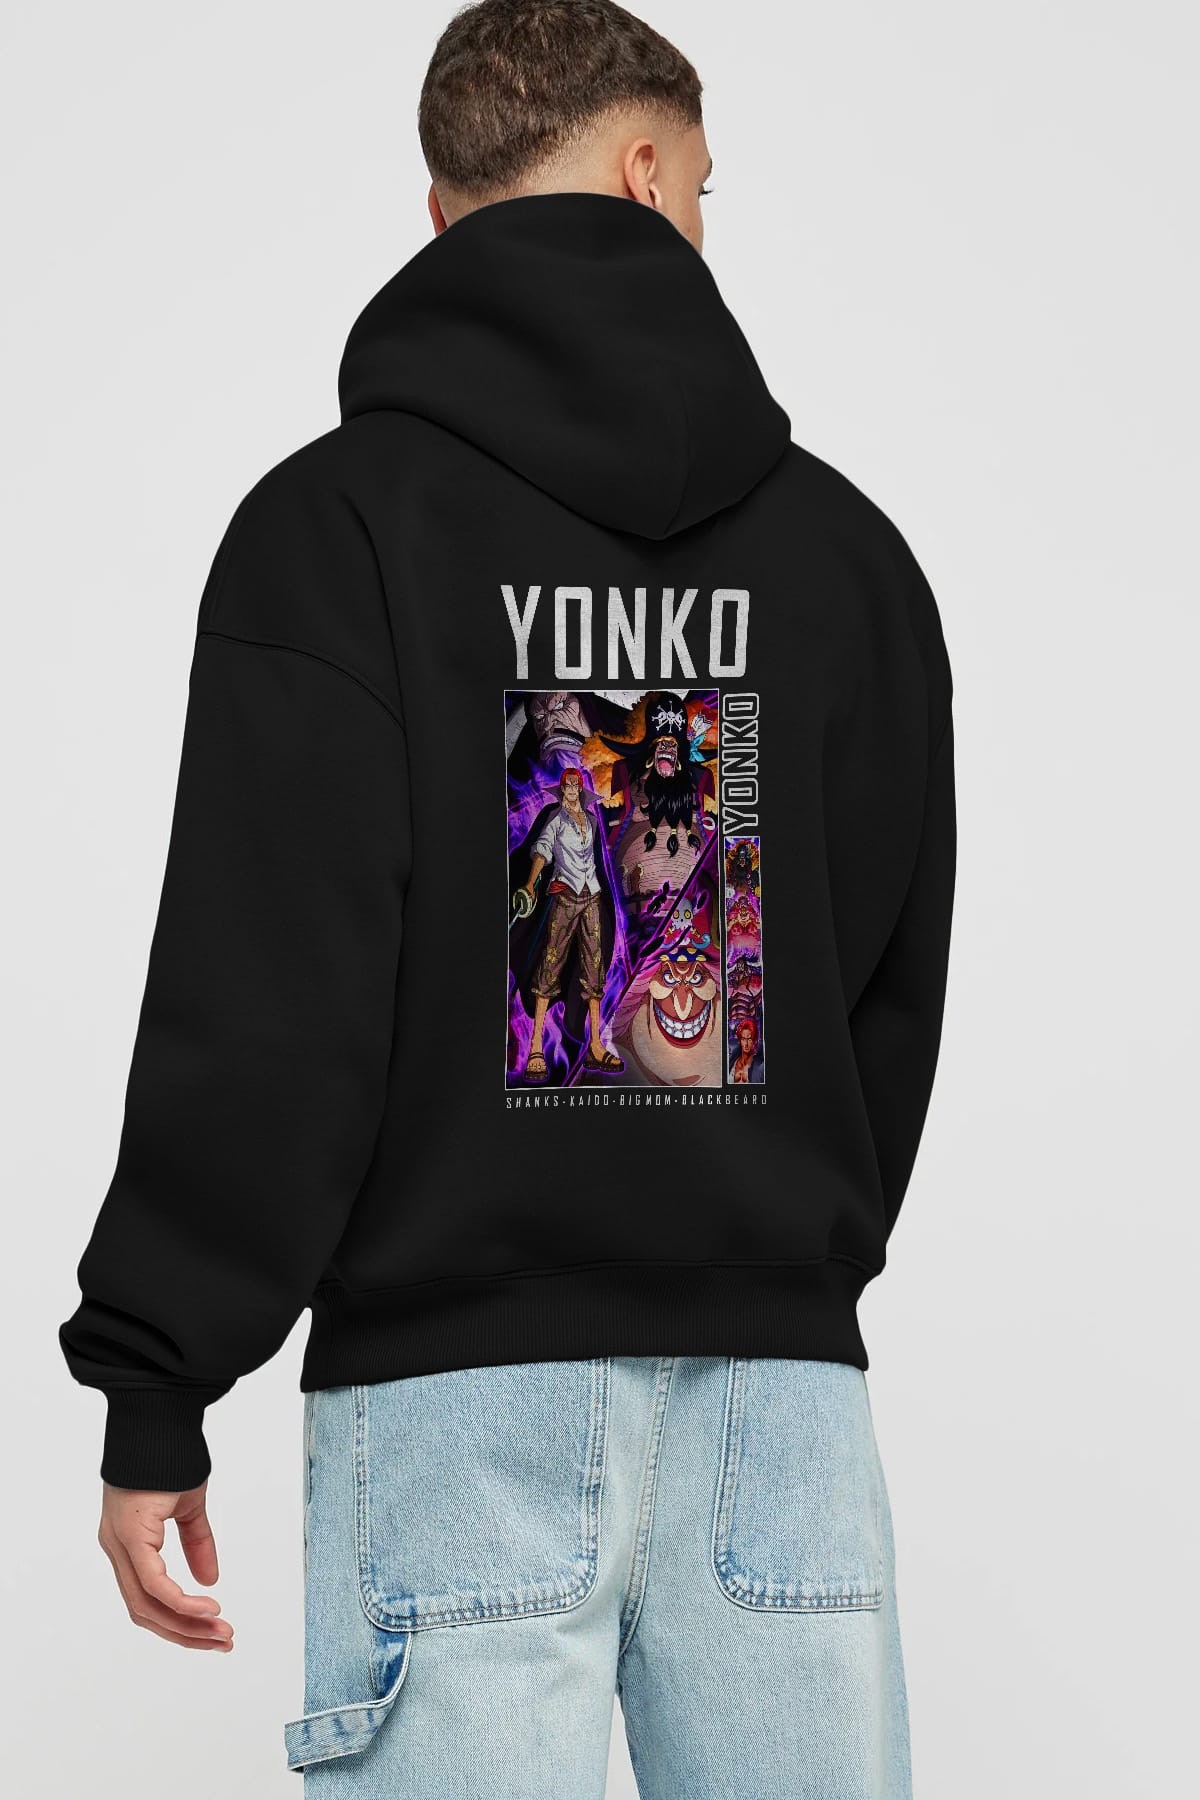 Yonko Anime Arka Baskılı Hoodie Oversize Kapüşonlu Sweatshirt Erkek Kadın Unisex